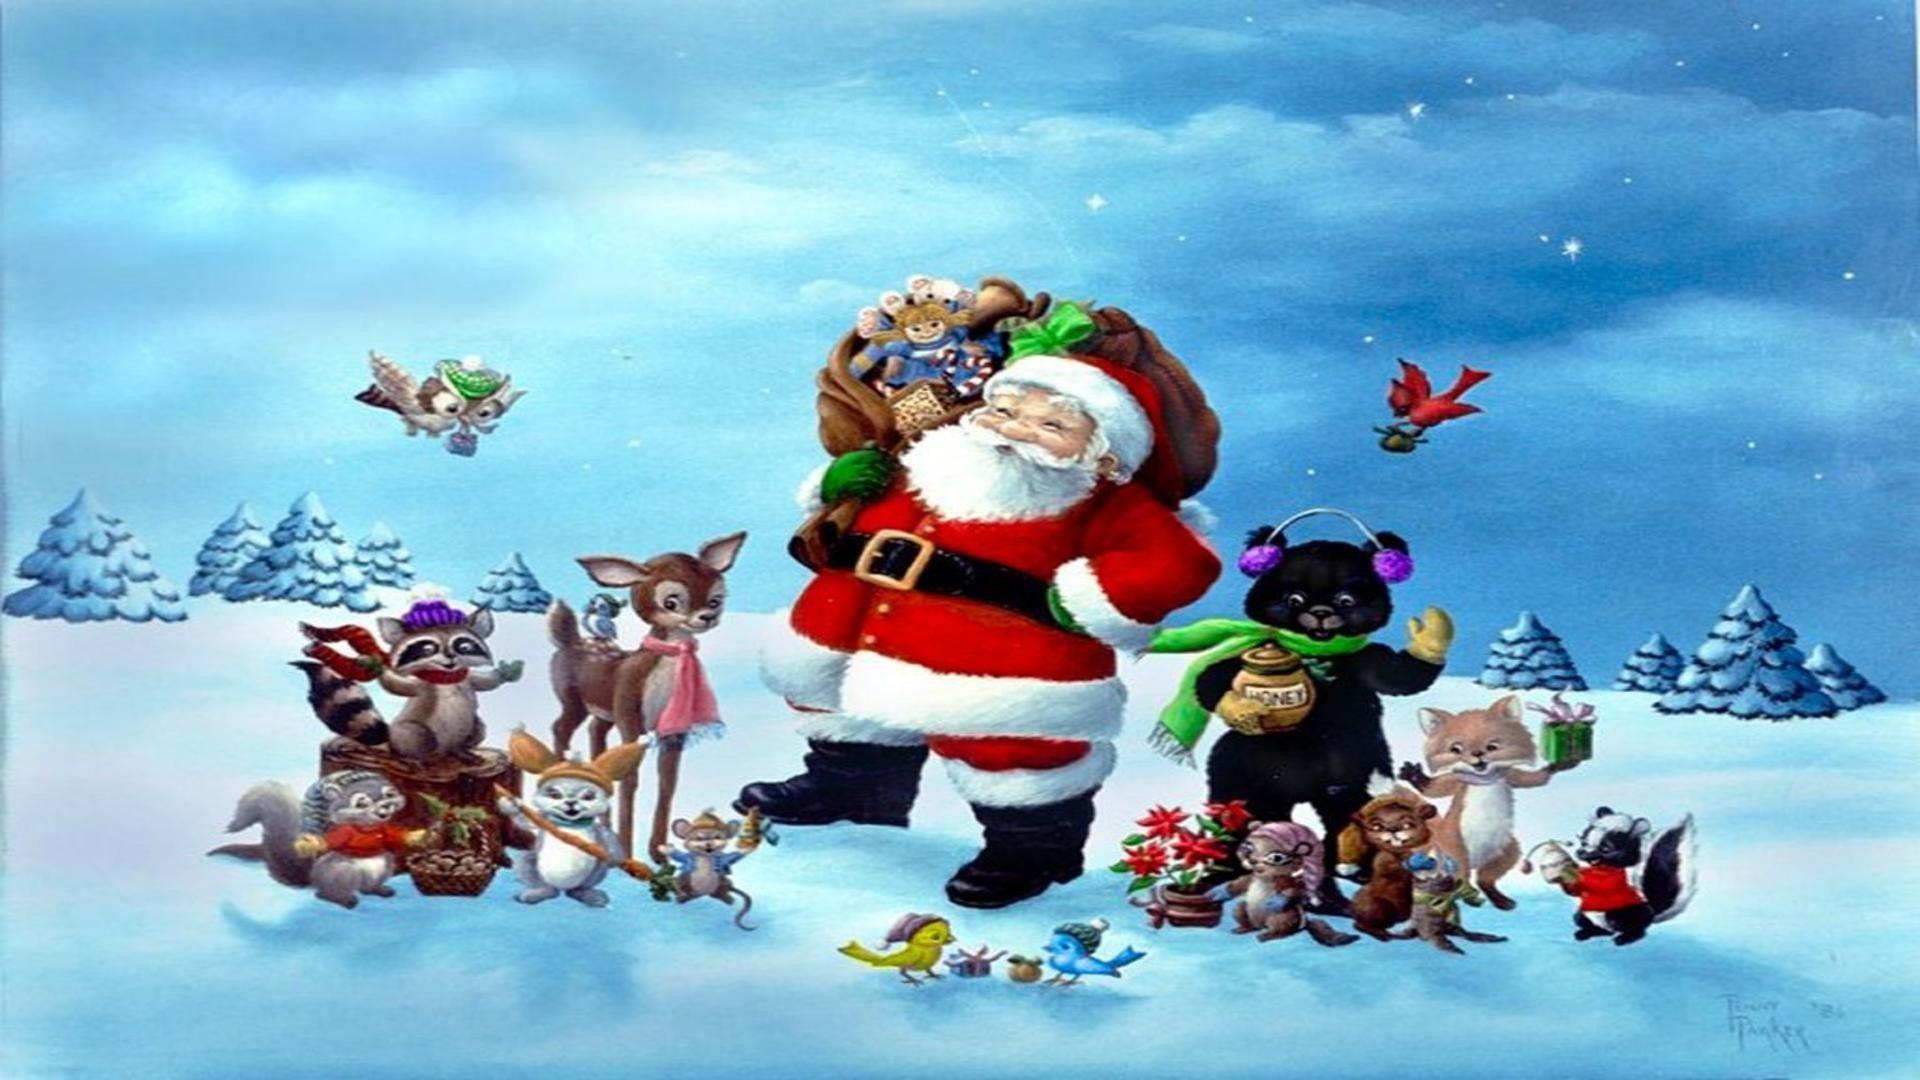 Hình nền Roblox Giáng sinh sẽ mang đến cho bạn nhiều niềm vui trong mùa lễ hội này. Những hình ảnh đẹp và lung linh đang chờ đón bạn. Bạn muốn trang trí cho máy tính hay điện thoại của mình bằng những hình nền đó? Hãy nhanh chóng xem qua danh sách liên quan và chọn cho mình những bức ảnh đẹp và đầy cảm xúc nhất nào!